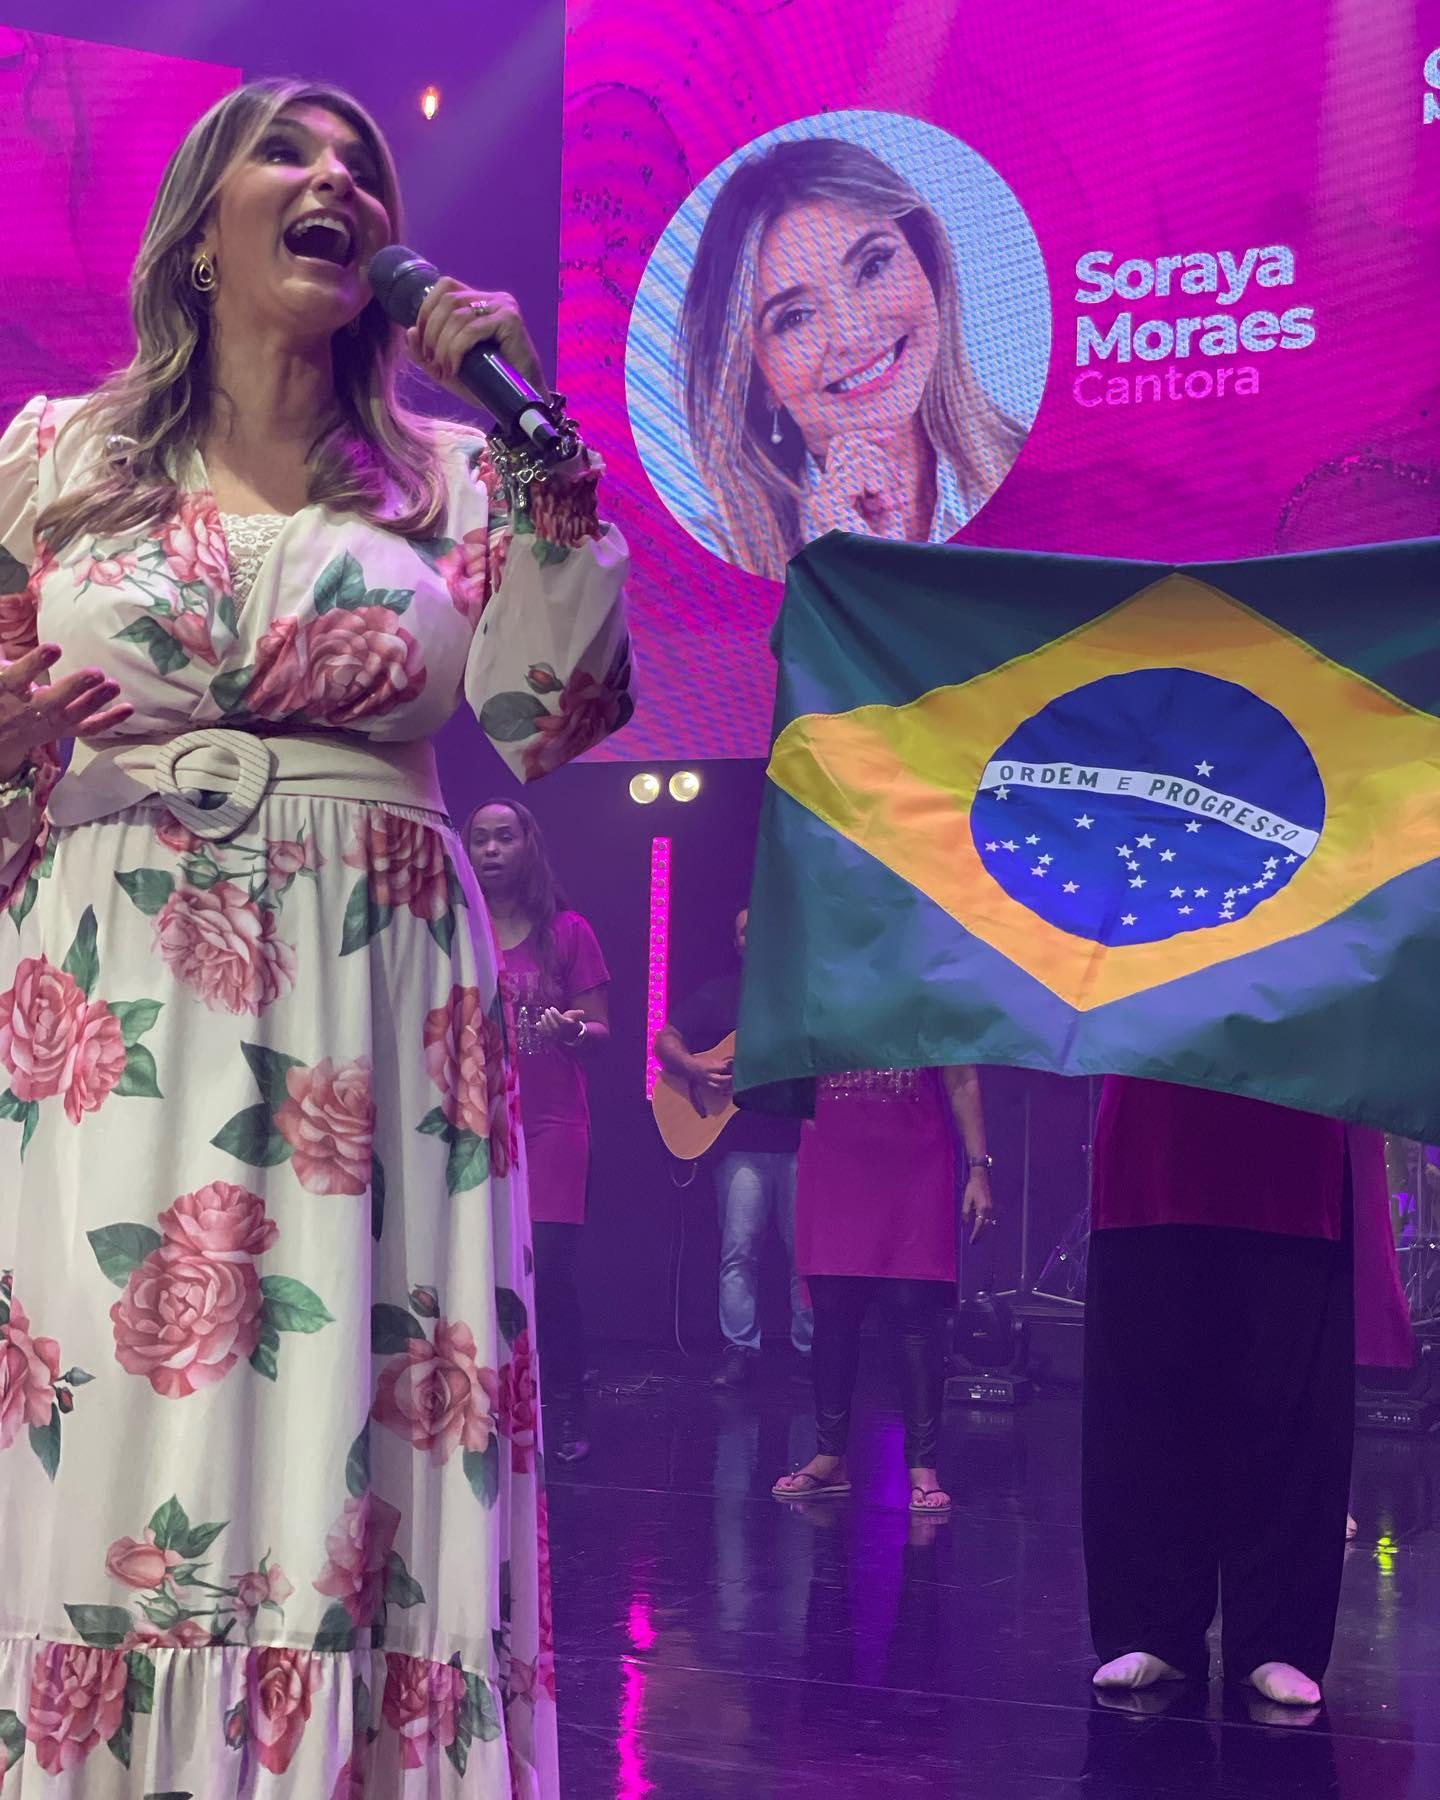 Soraya Moraes